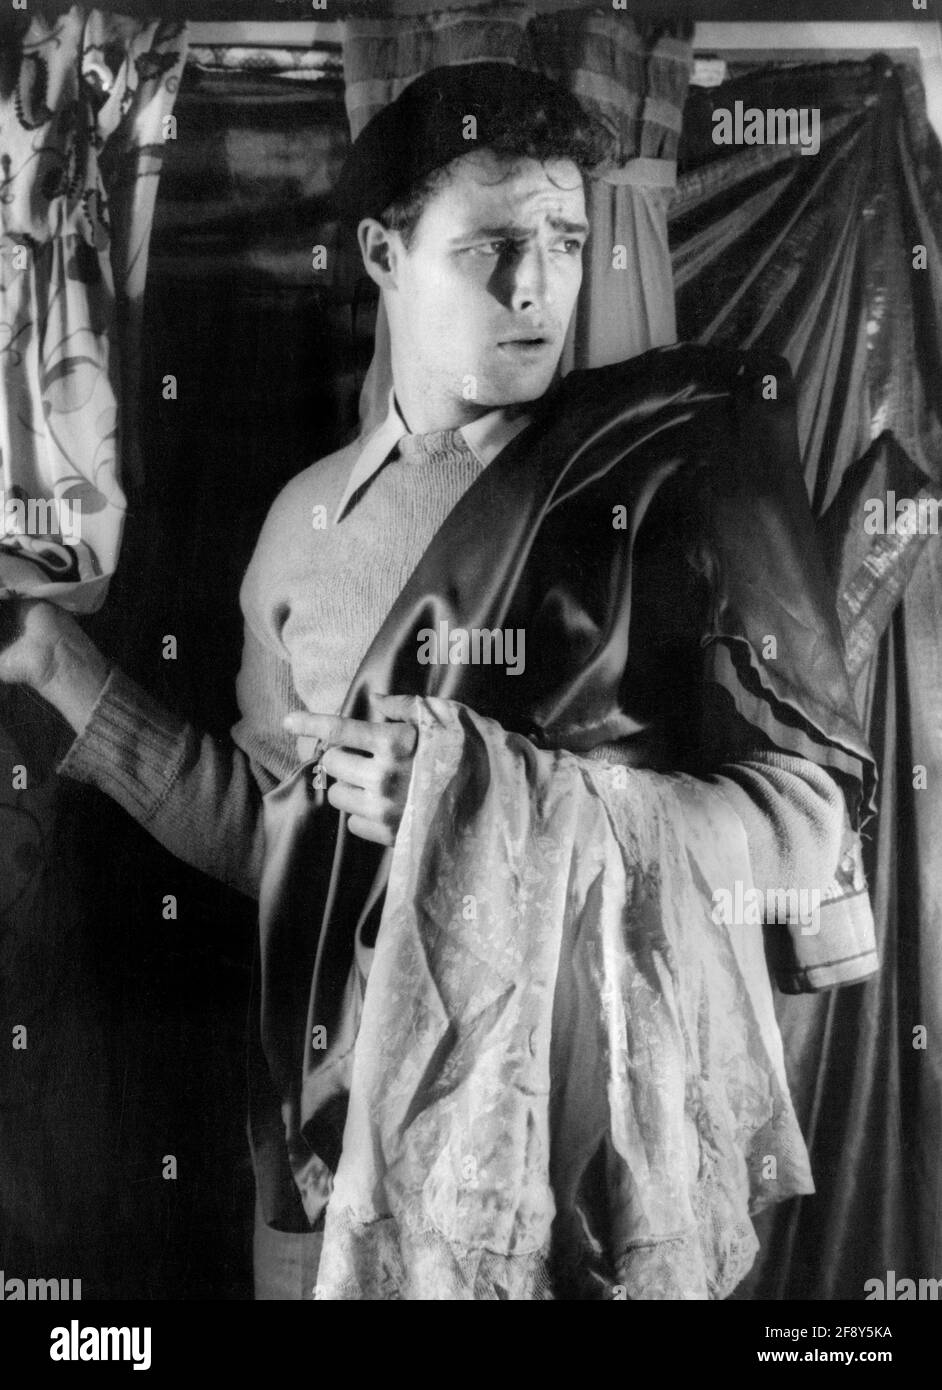 Marlon Brando. Portrait de l'acteur et réalisateur américain Marlon Brando Jr. (1924-2004) dans la production de Broadway de 'A Streetcar named Desire'. Photo de Carl van Vechten, 1948 Banque D'Images